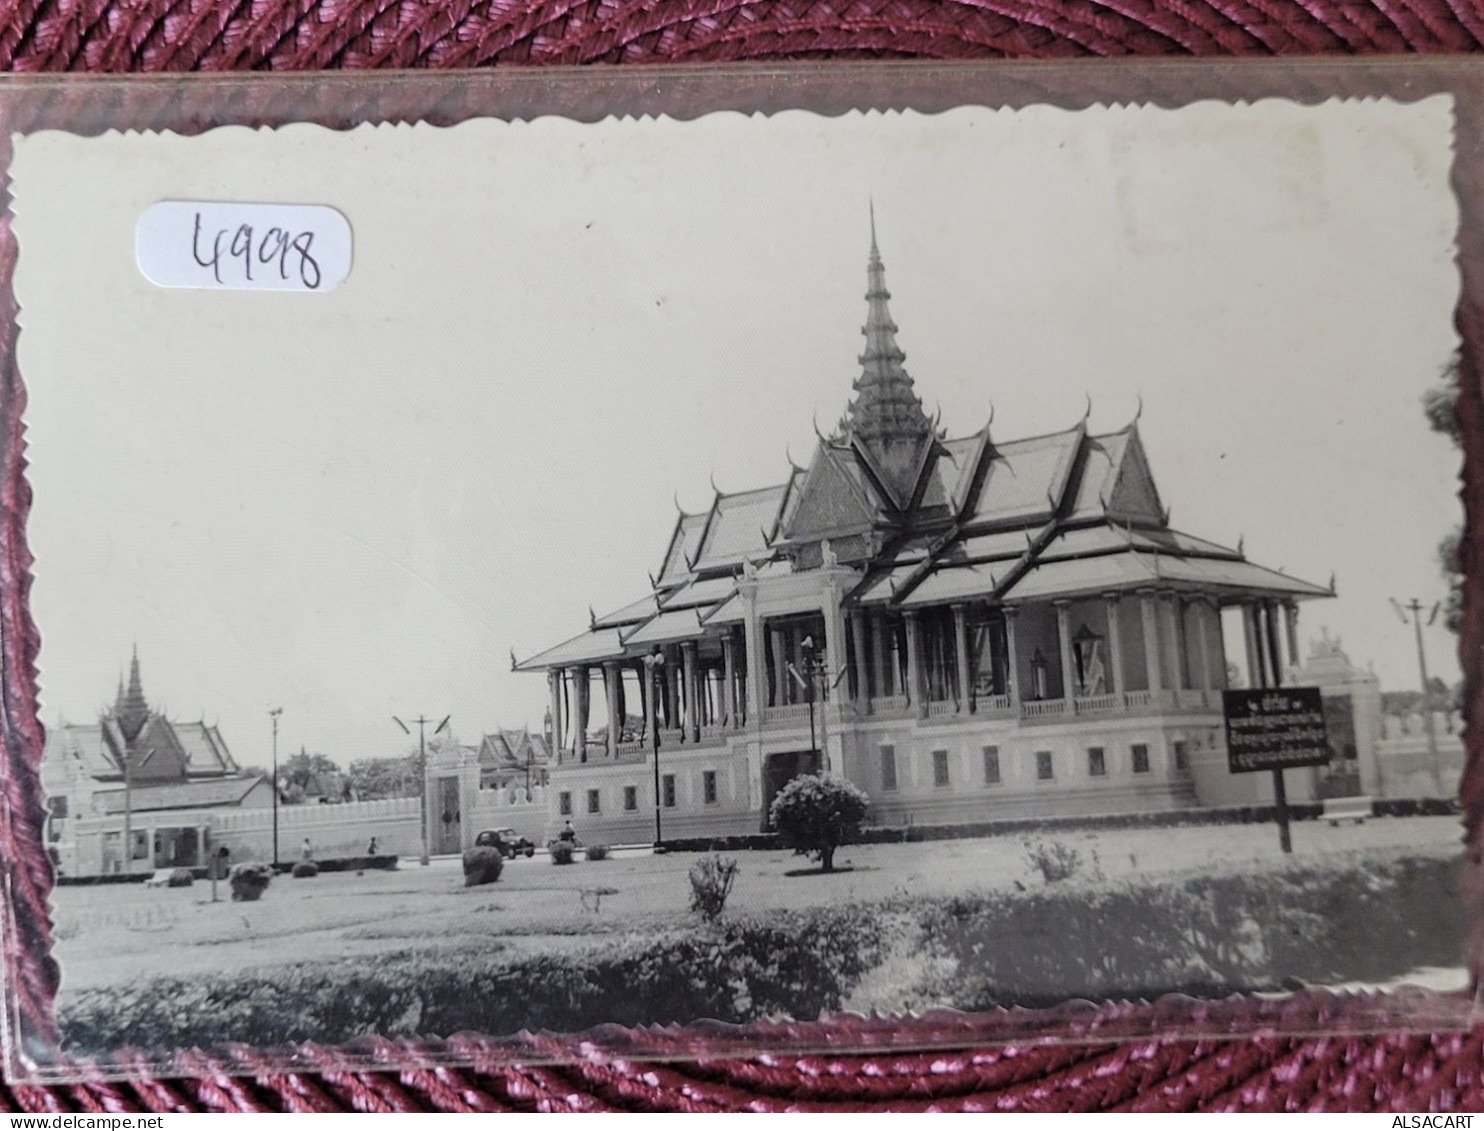 Phnom Penh , Le Palais Royal - Vietnam